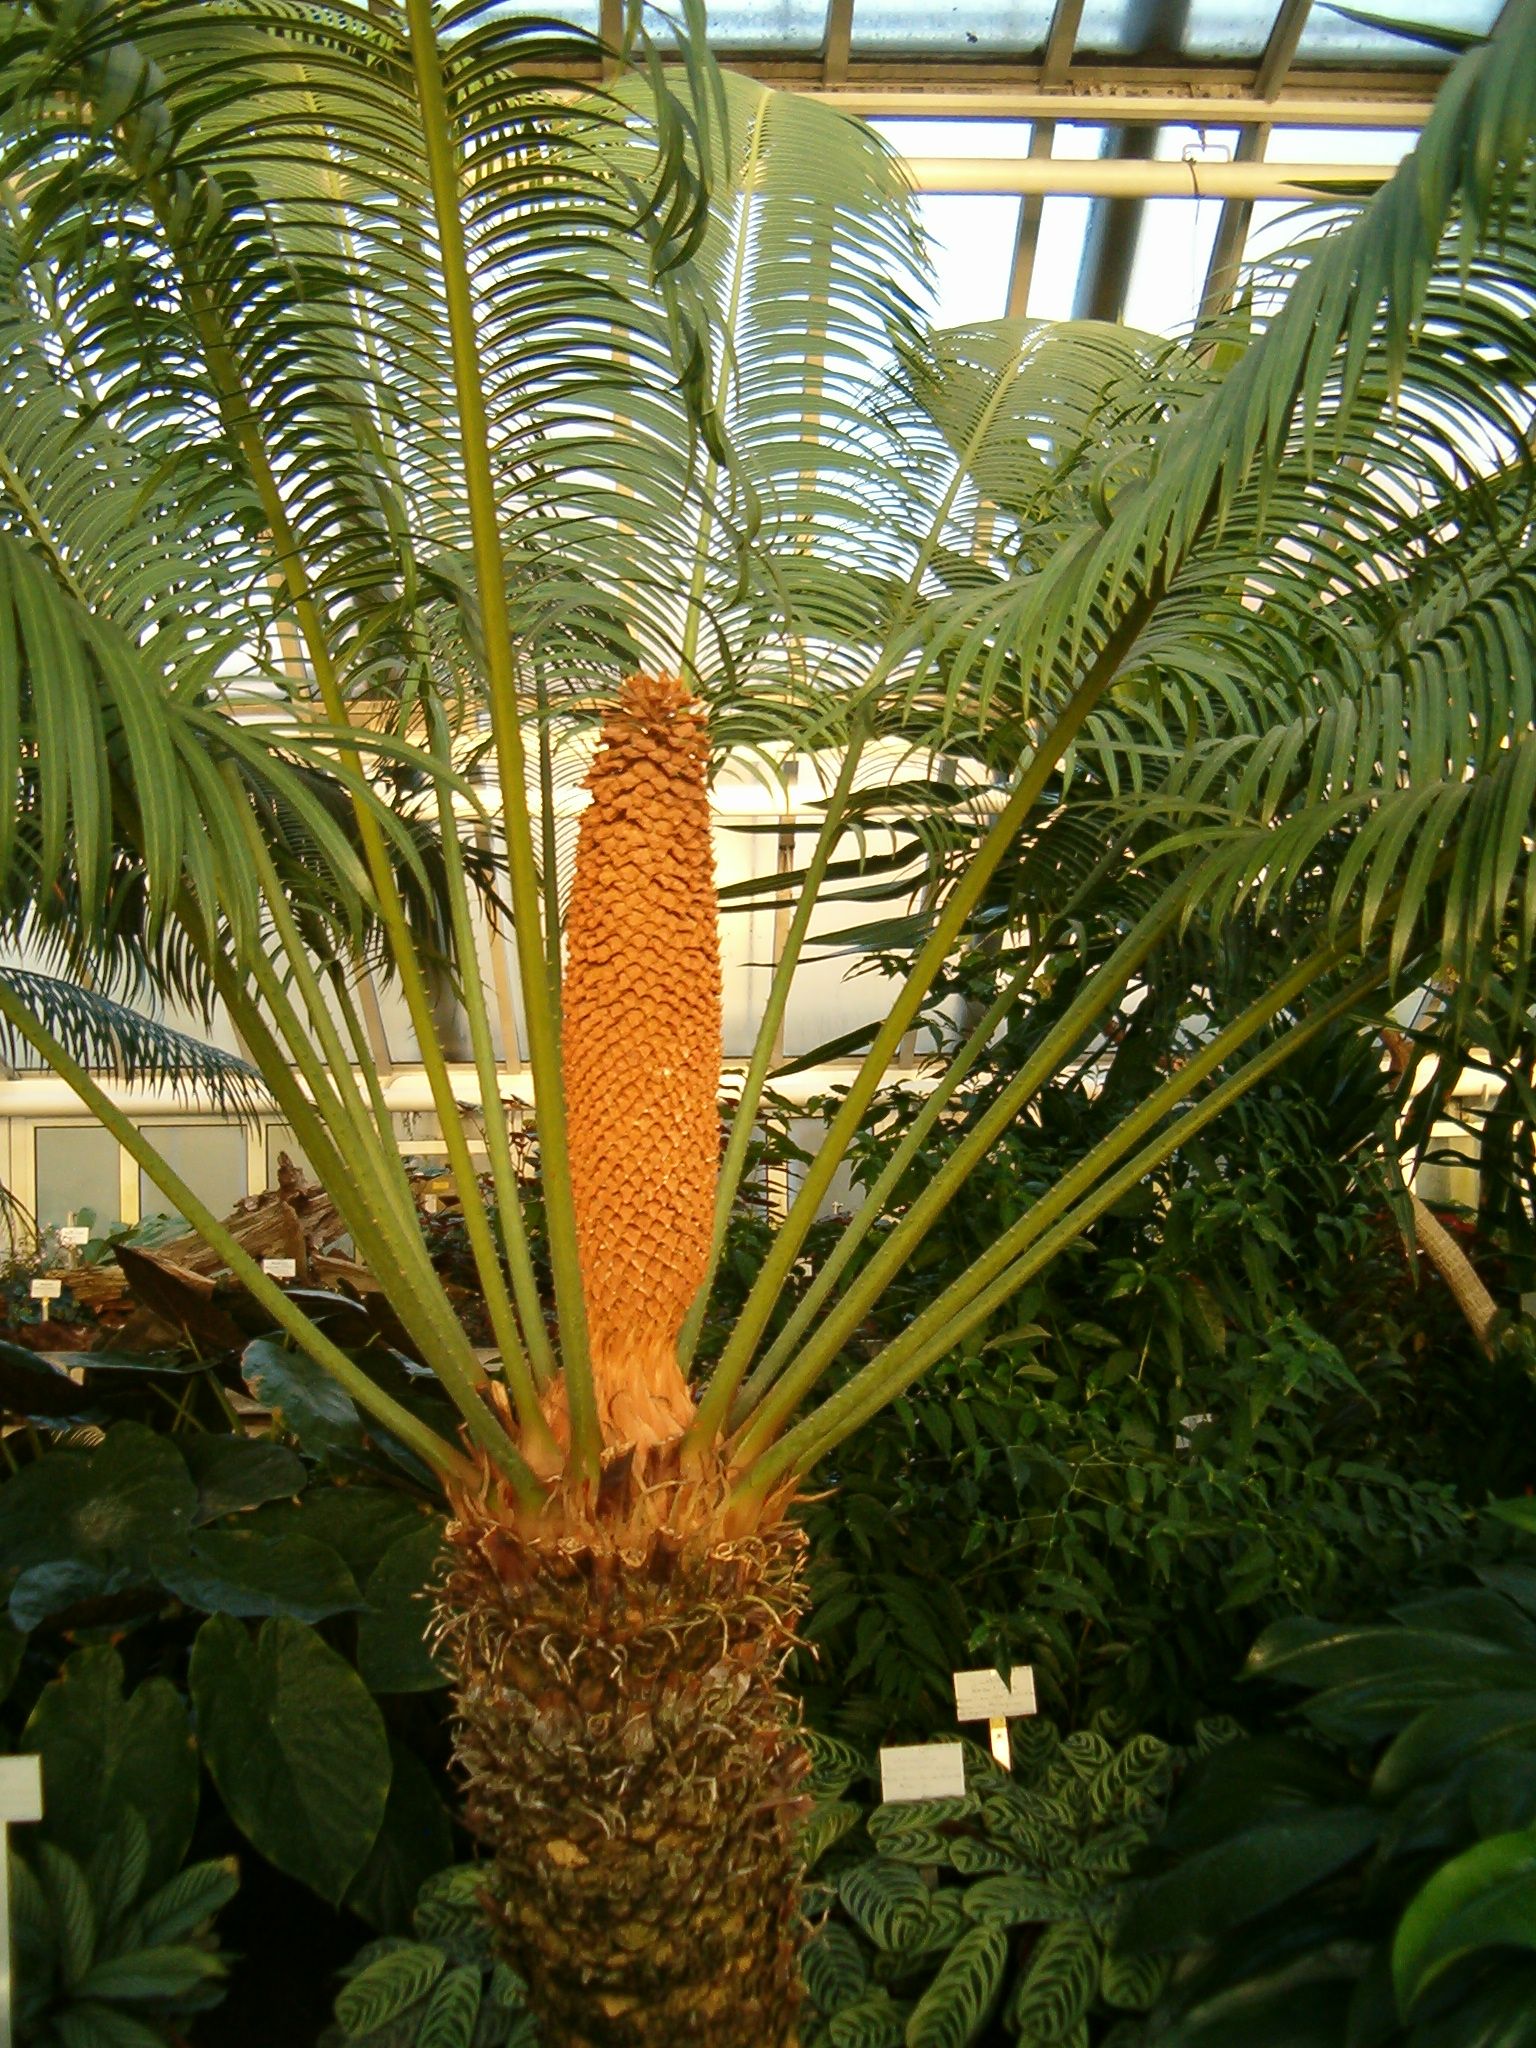 Цветы в виде пальмы фото и название